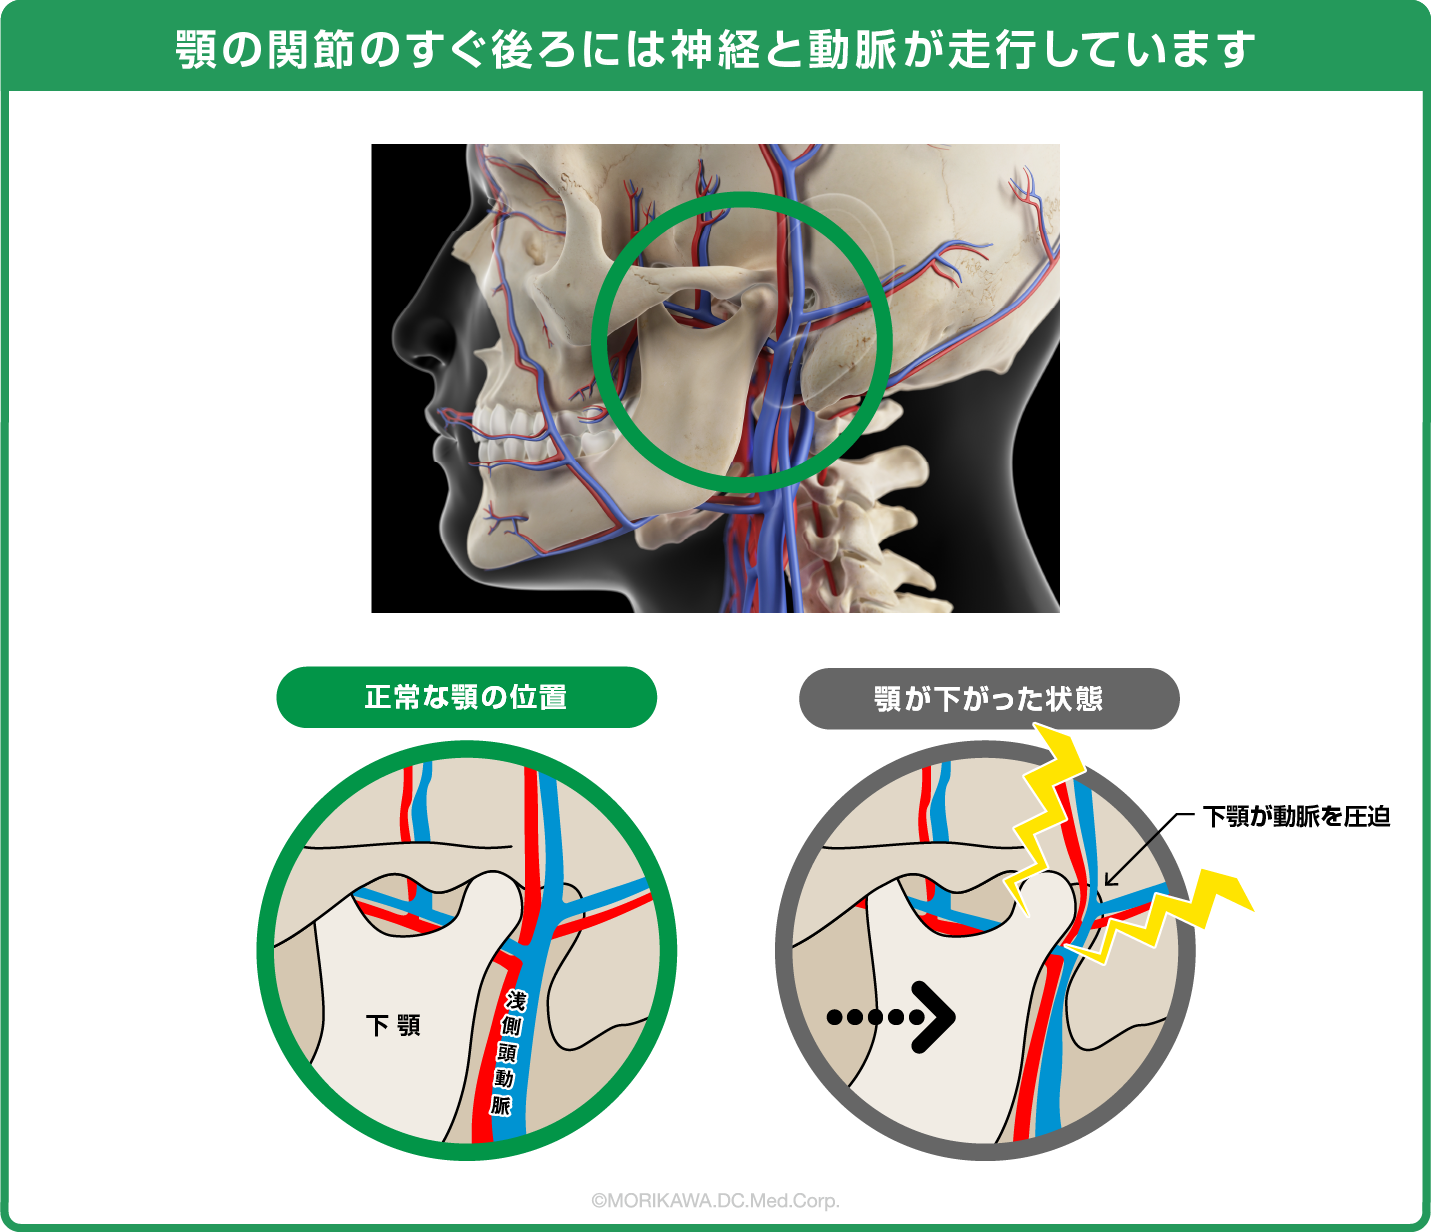 顎の関節のすぐ後ろには神経と動脈が走行しています